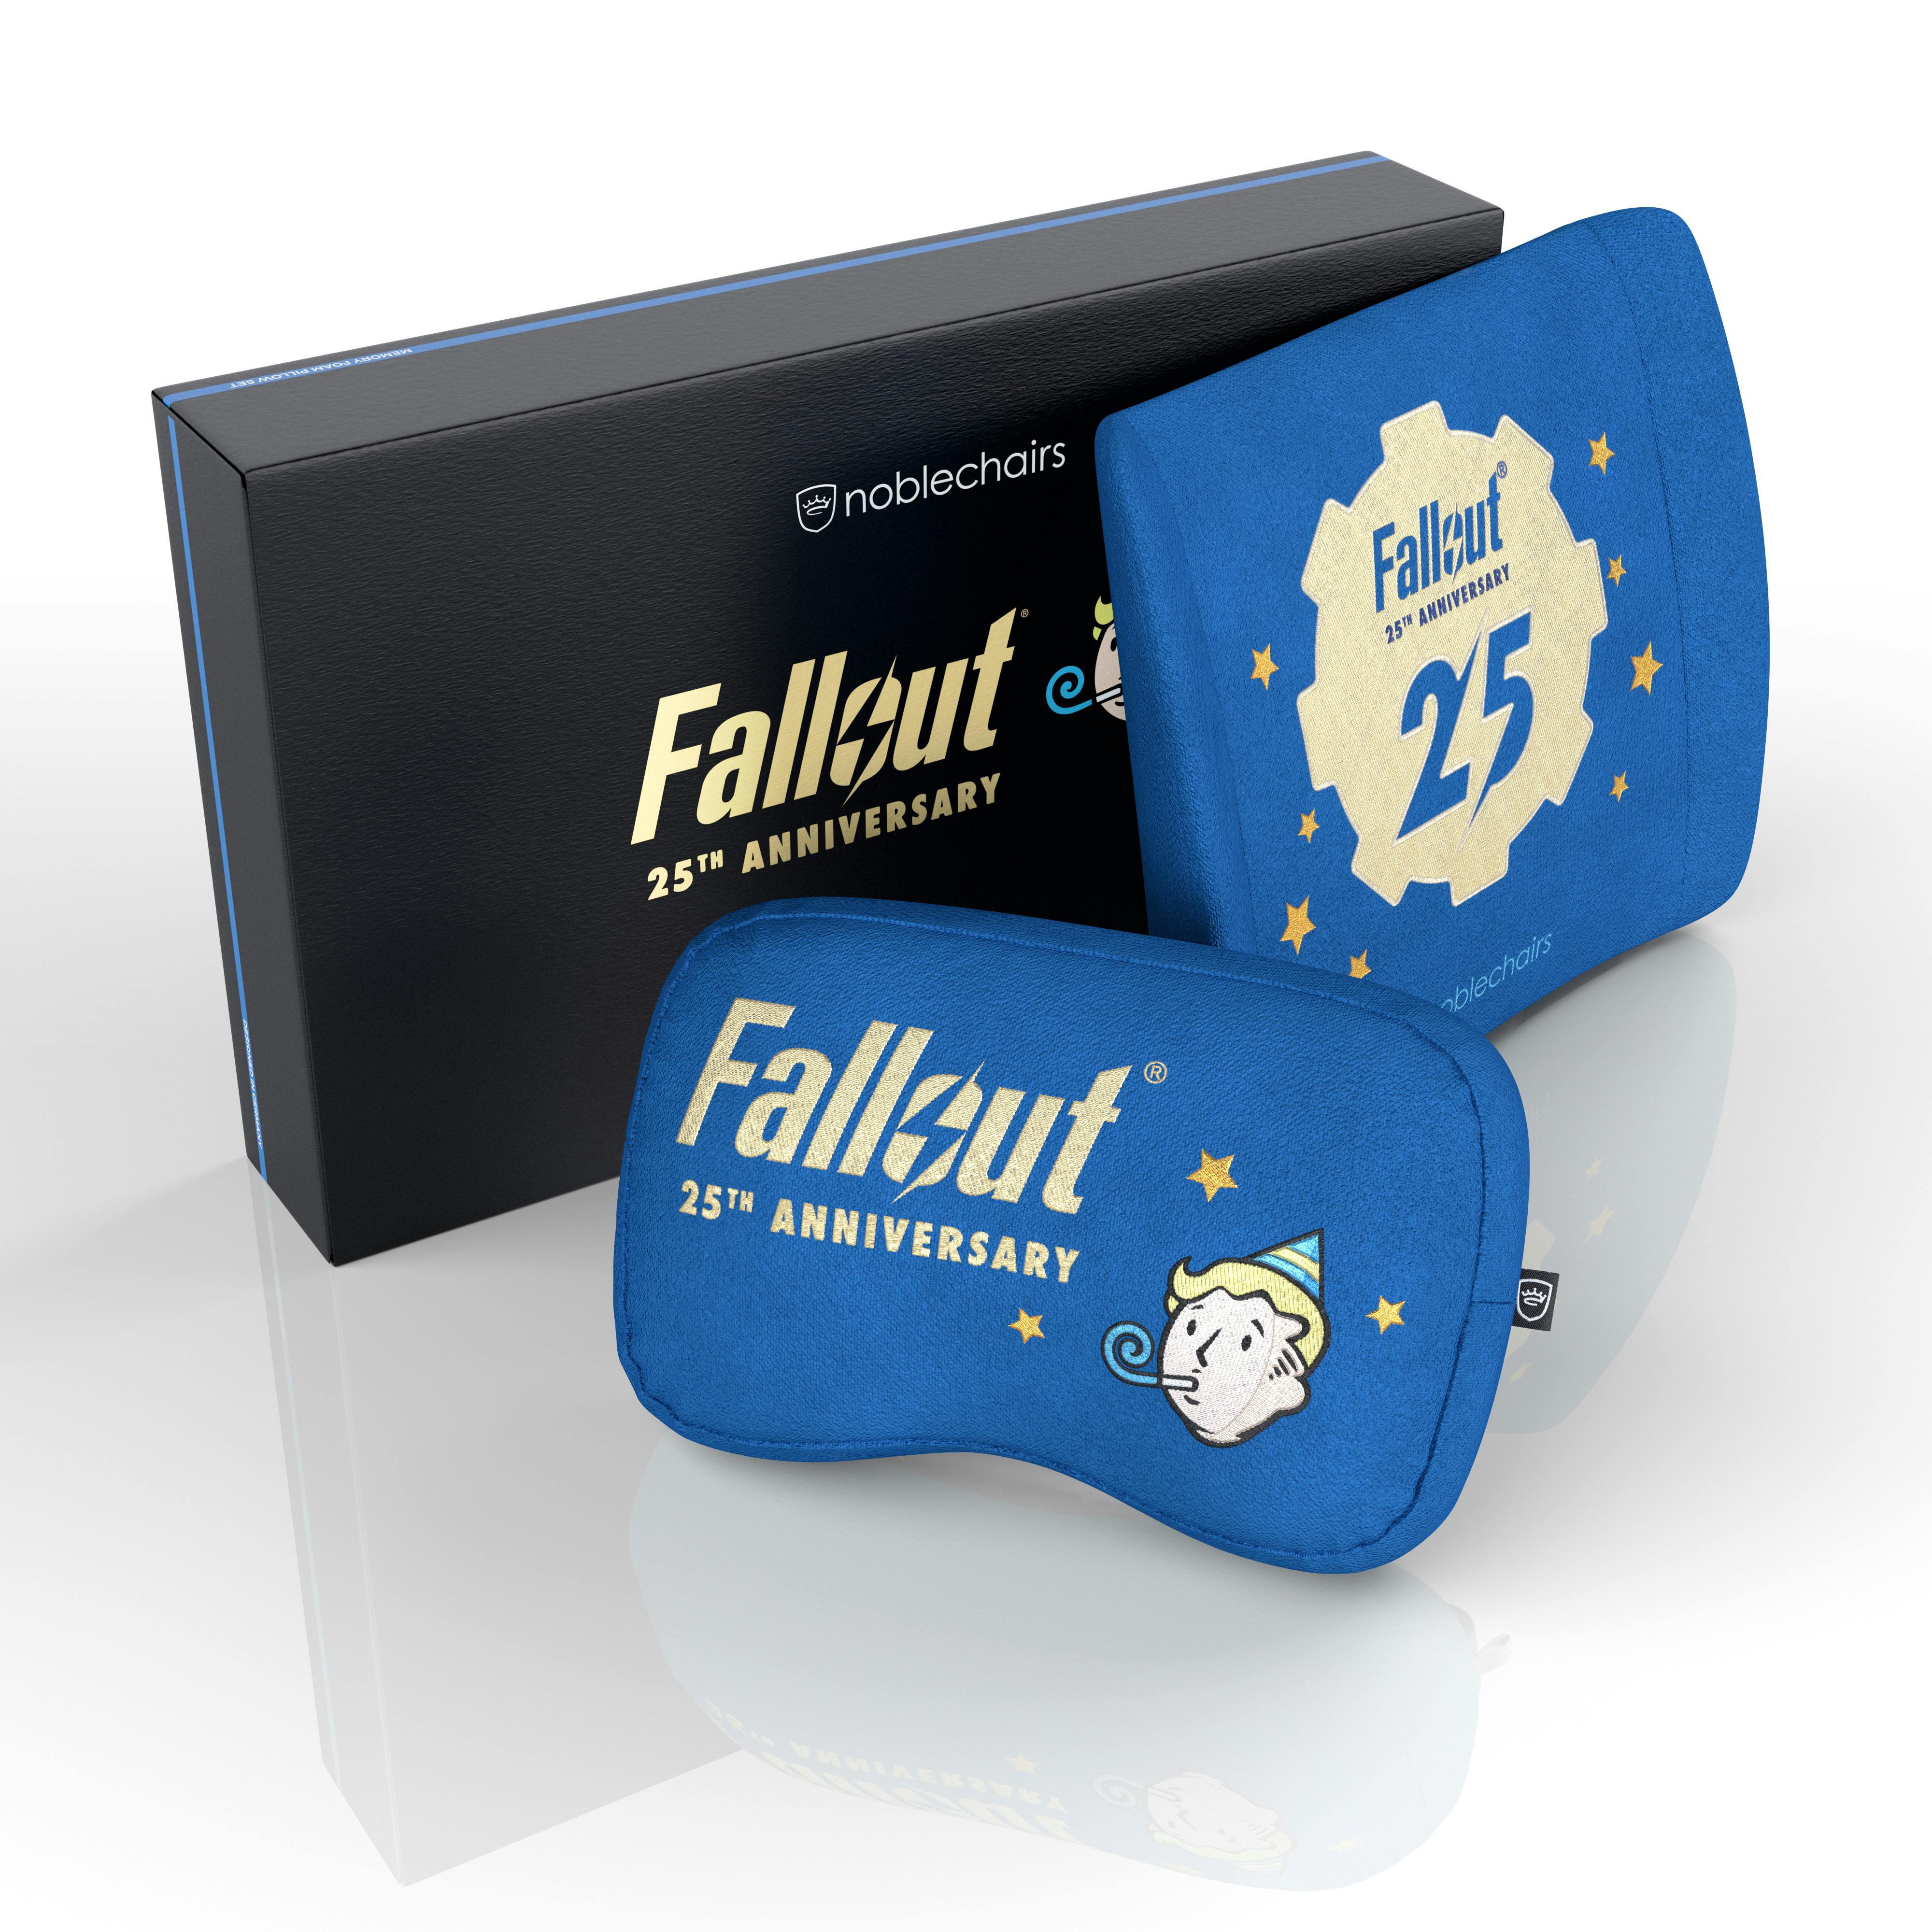 Memory Foam Conjunto de Almofadas - Fallout 25th Anniversary Edition